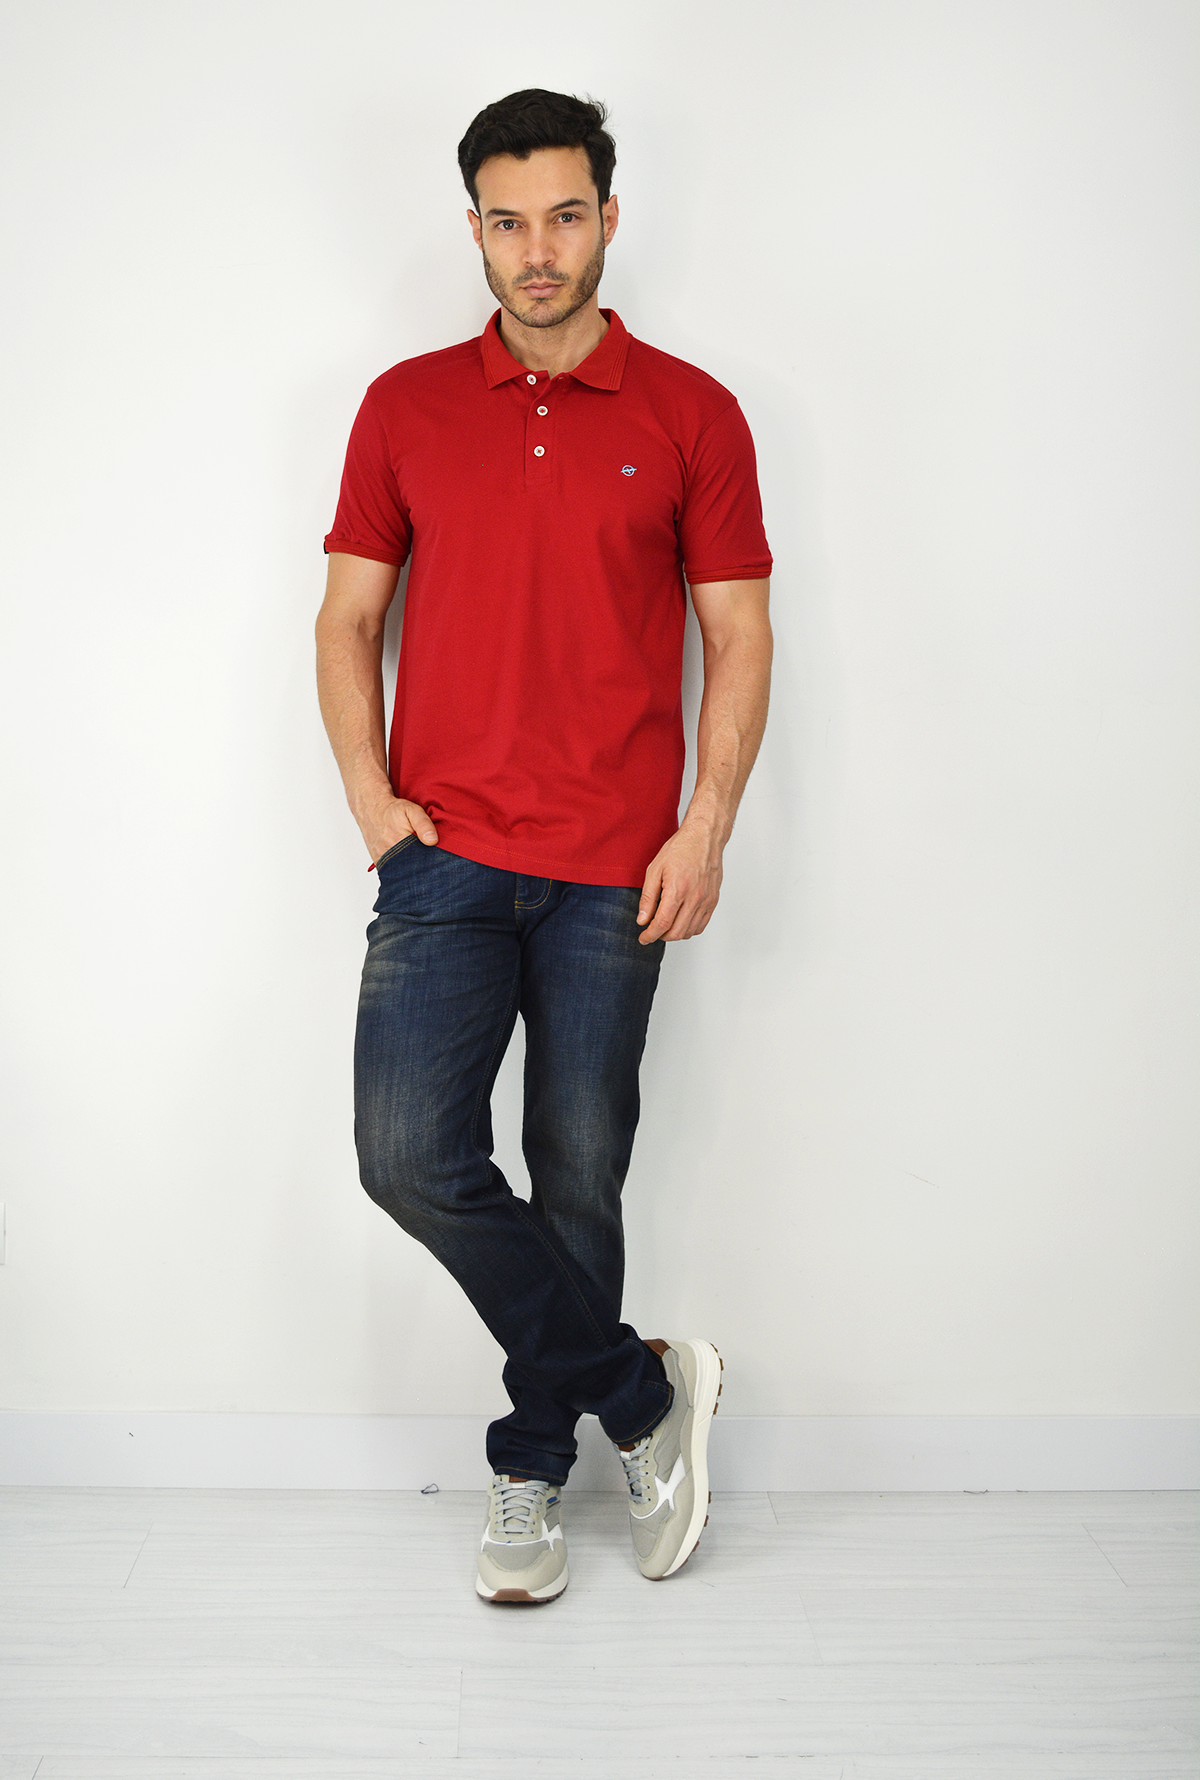 Camiseta Tipo Polo Para Hombre Roja CPB07